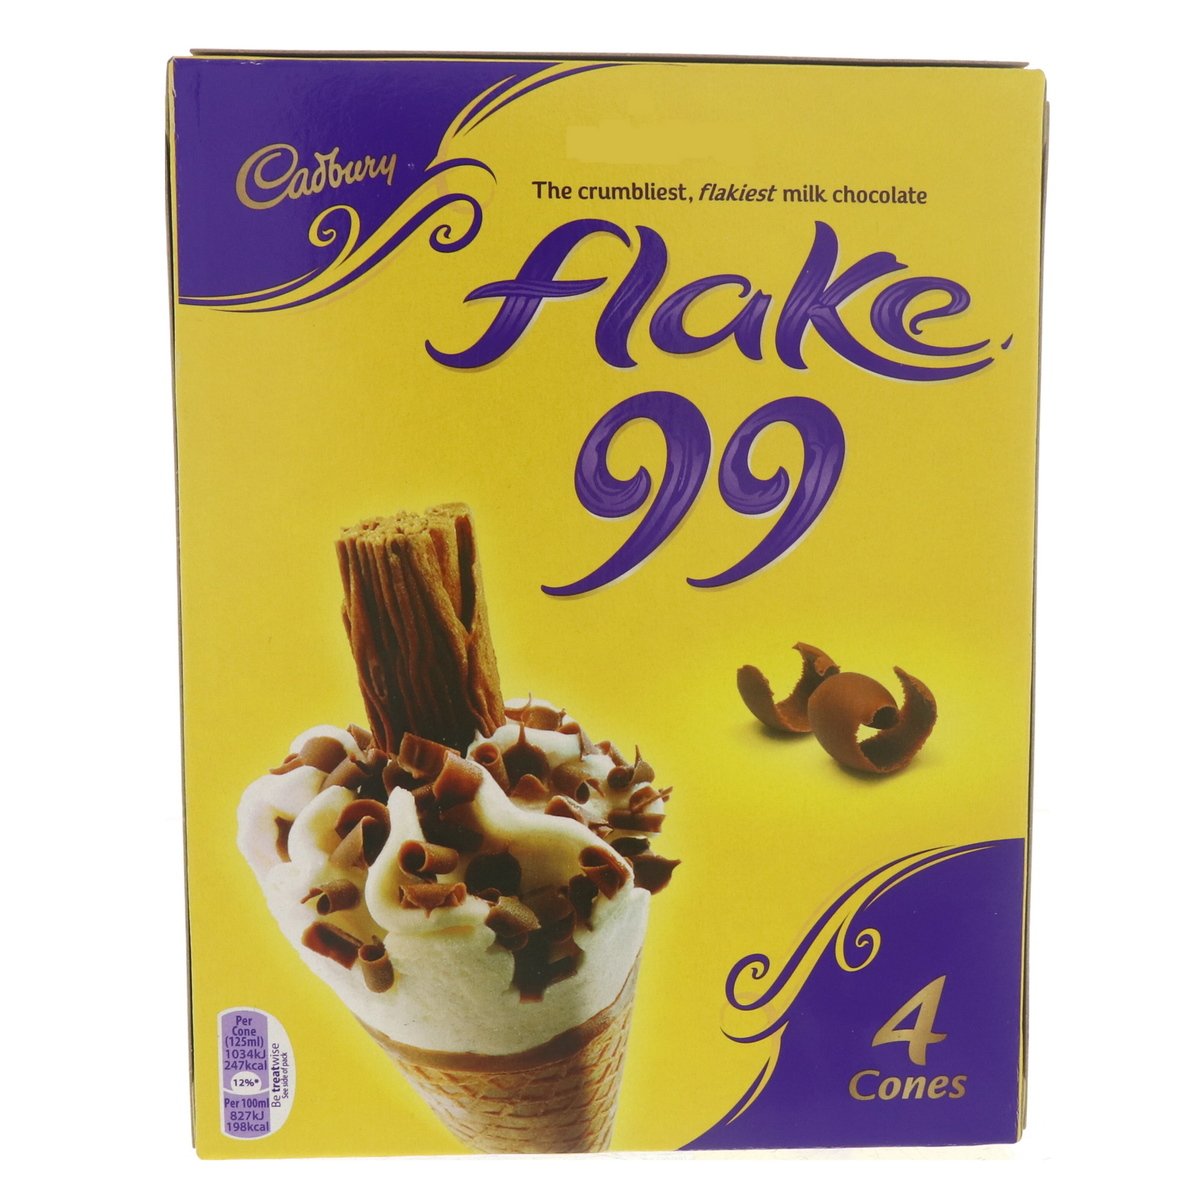 اشتري قم بشراء Cadbury Cone Flake 99 4 x 125 ml Online at Best Price من الموقع - من لولو هايبر ماركت Ice Cream Impulse في الكويت